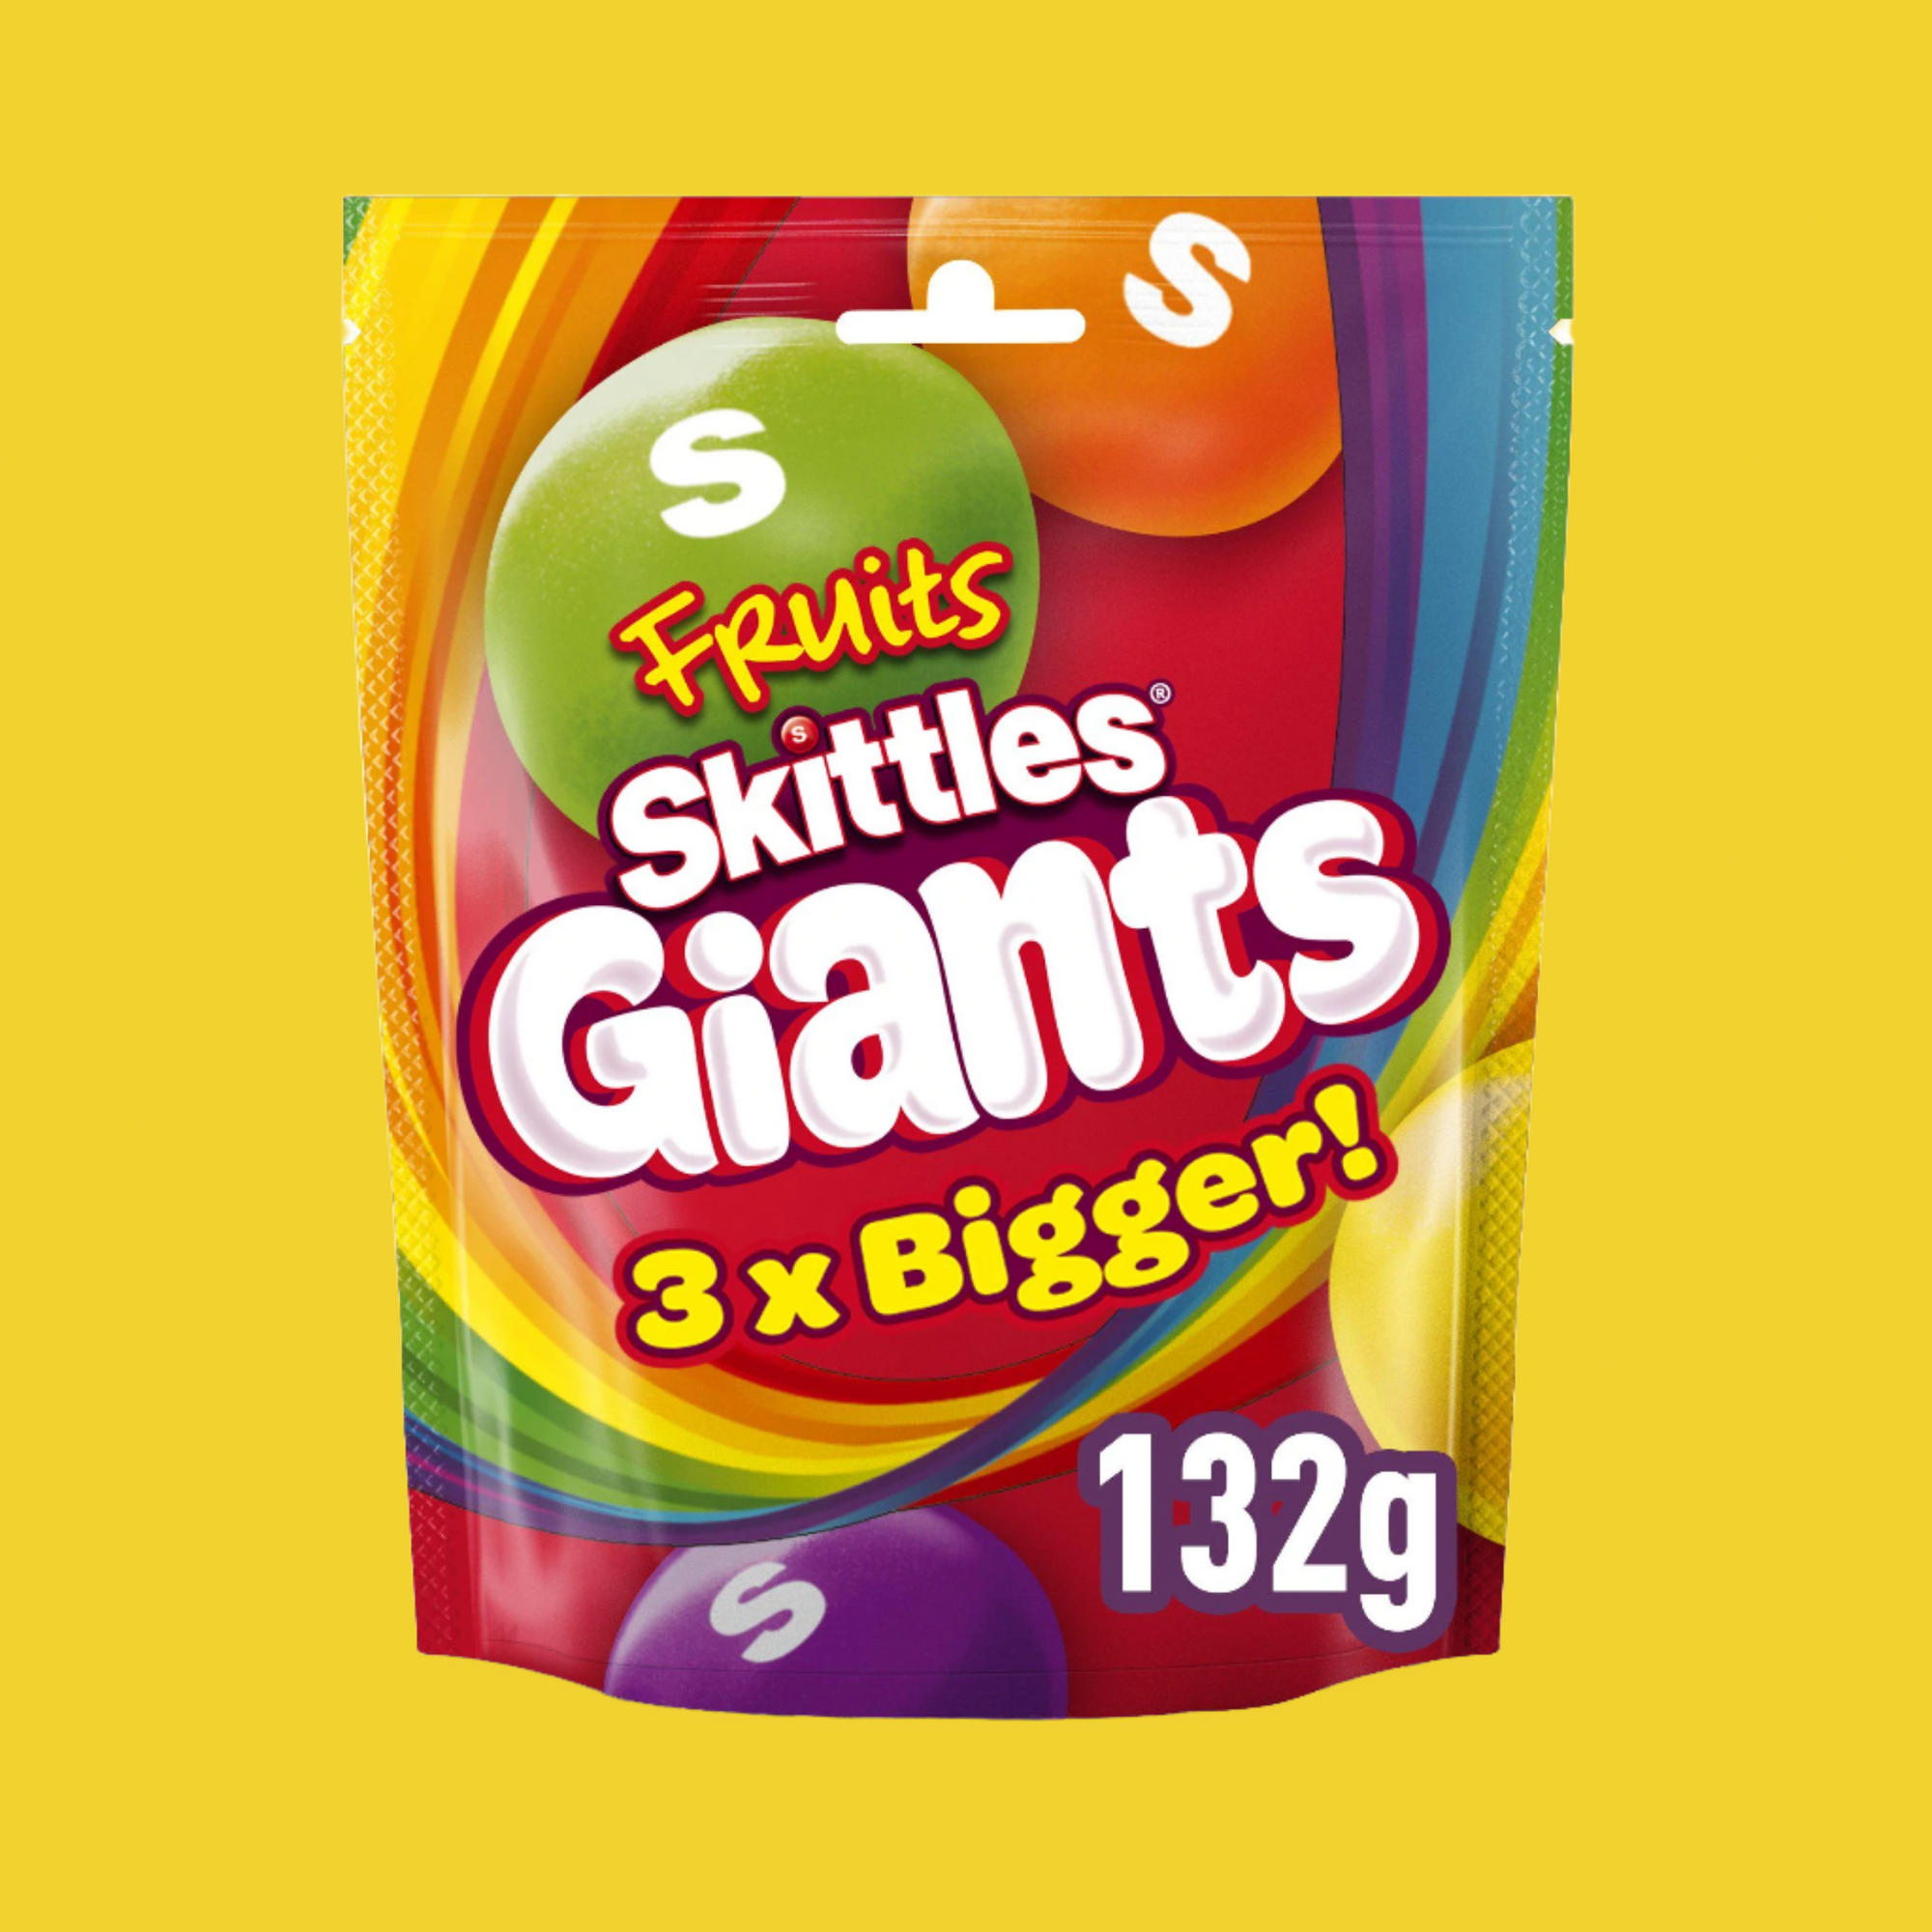 Skittles Giants 3x Bigger 132g (UK)